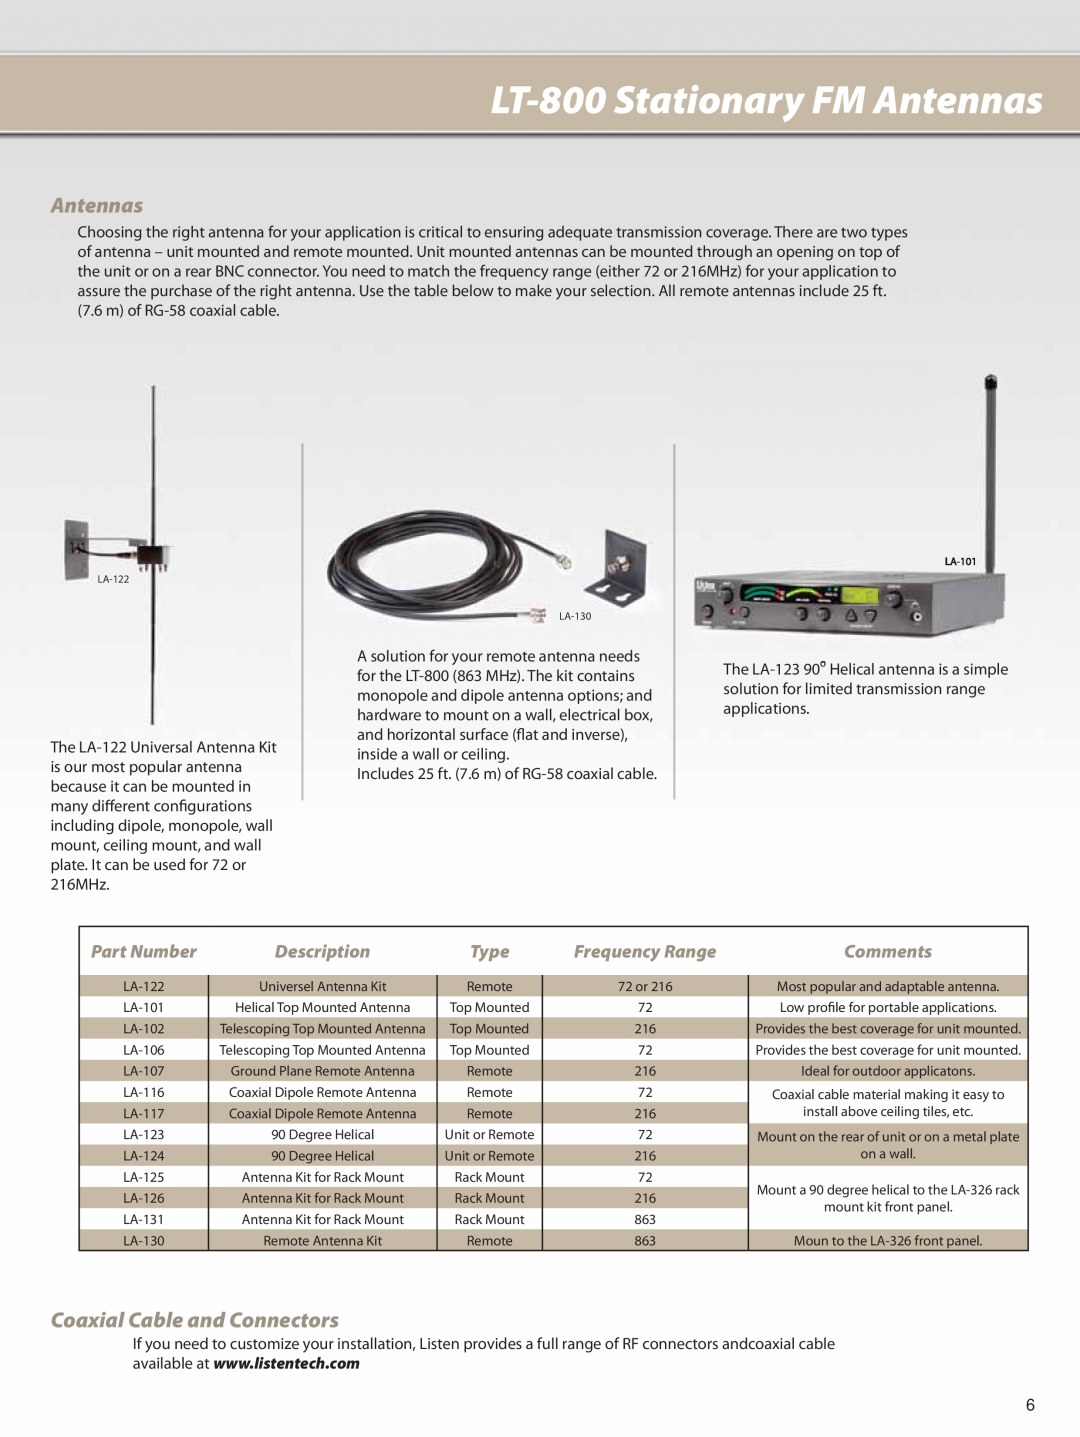 Listen Technologies LA-106 LT-800Stationary FM Antennas, Coaxial Cable and Connectors, Part Number, Description, Comments 